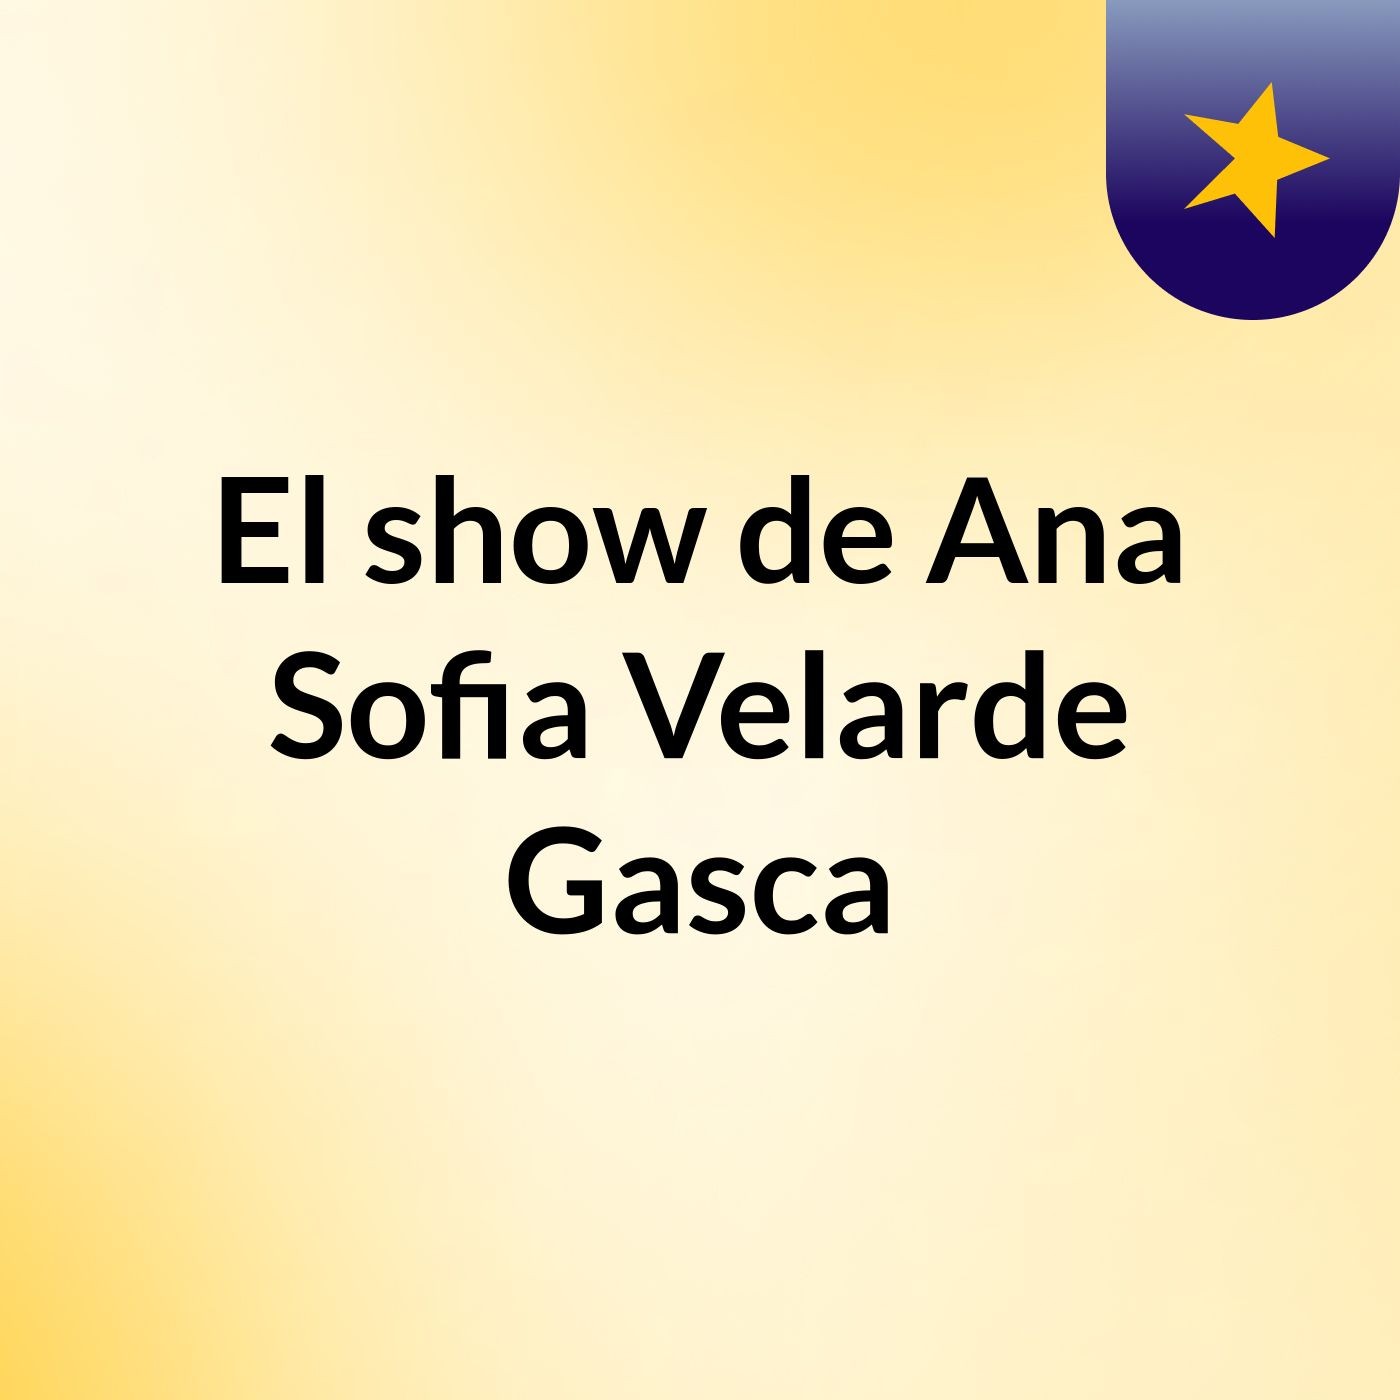 El show de Ana Sofia Velarde Gasca